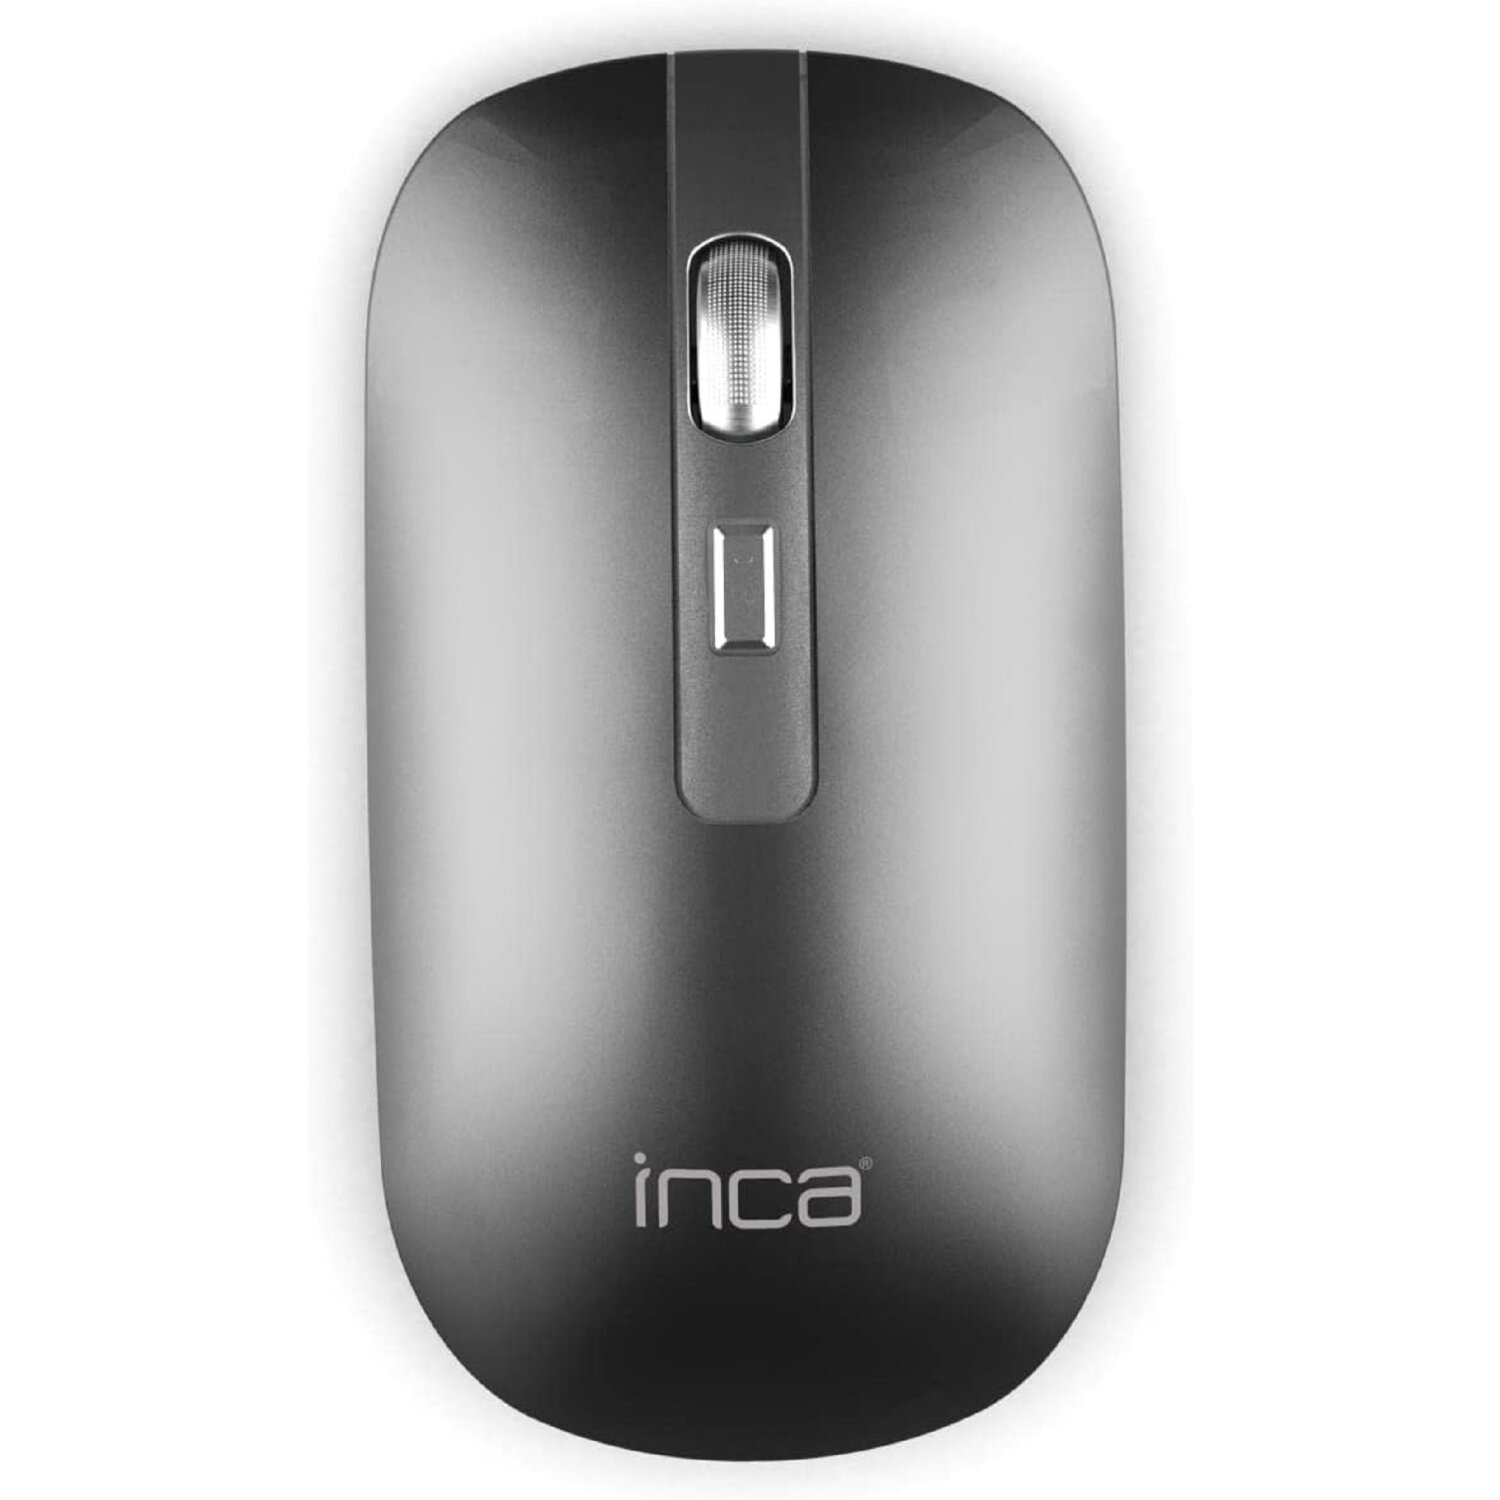 INCA IWM-531RG 1600 Maus, Grau DPI